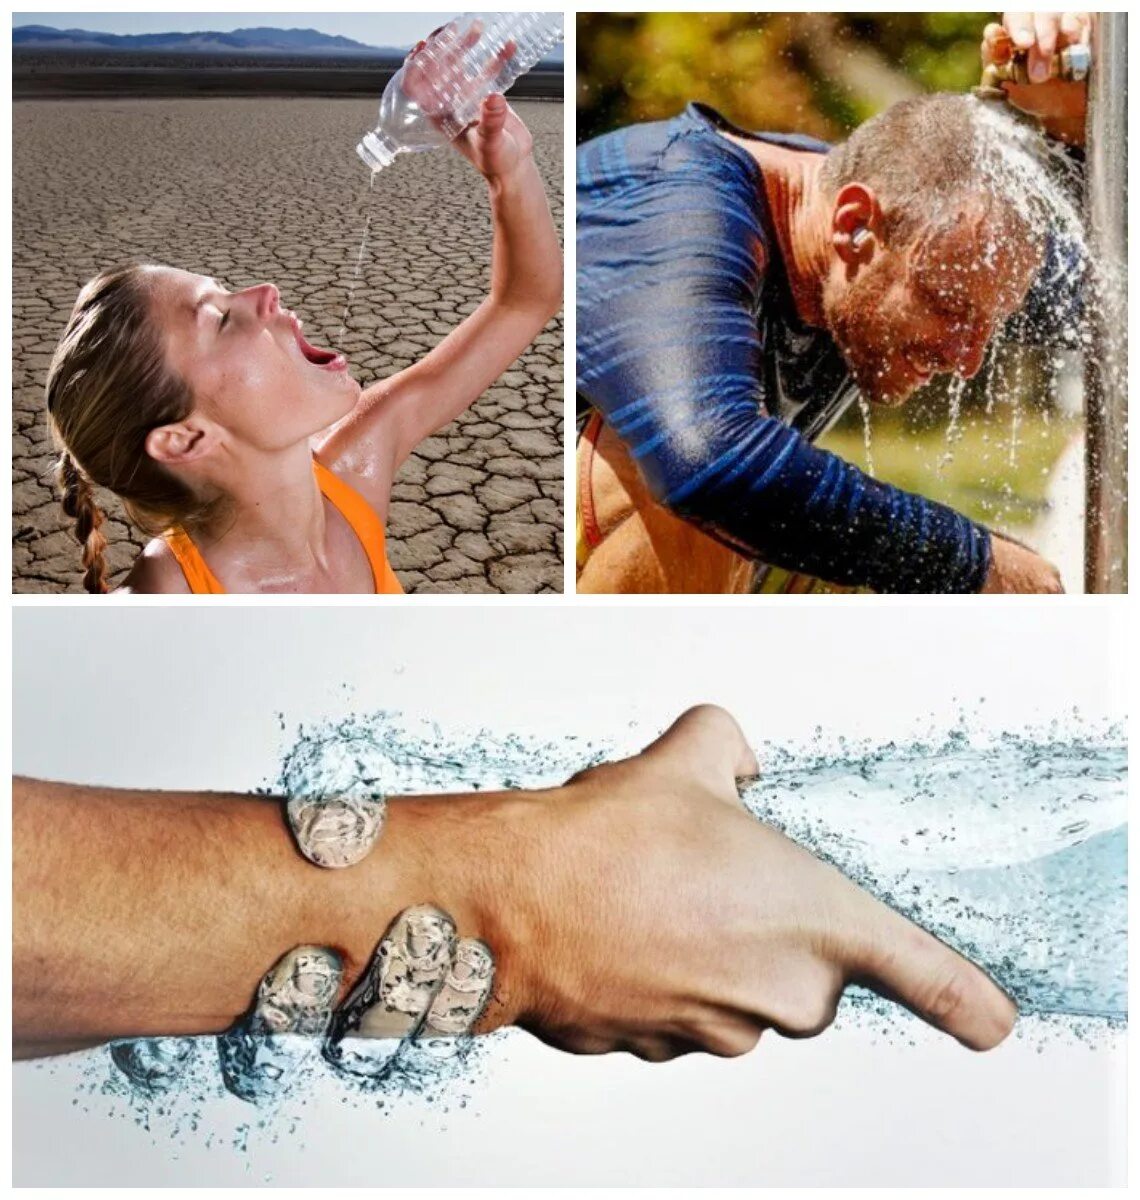 Вода при обезвоживания организма. Жажда воды. Спасаемся от жары. Жара обезвоживание. Вода в жару.